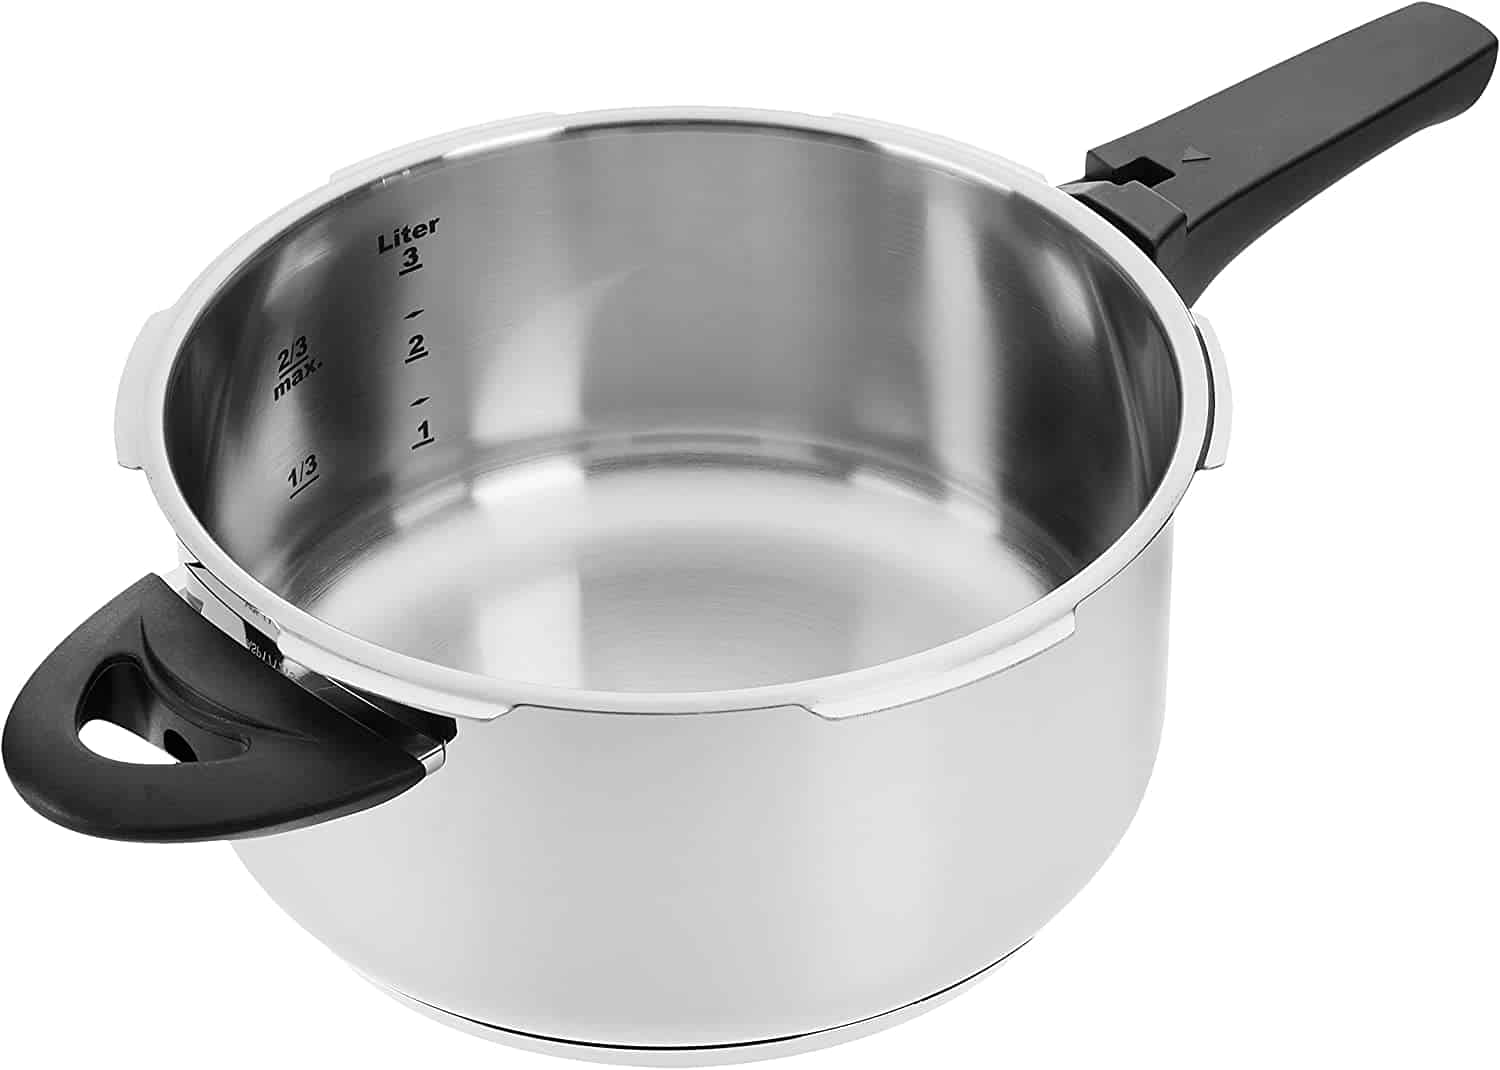 La olla a presión 4L es un utensilio de cocina pequeño, resistente y fácil de usar (Amazon)